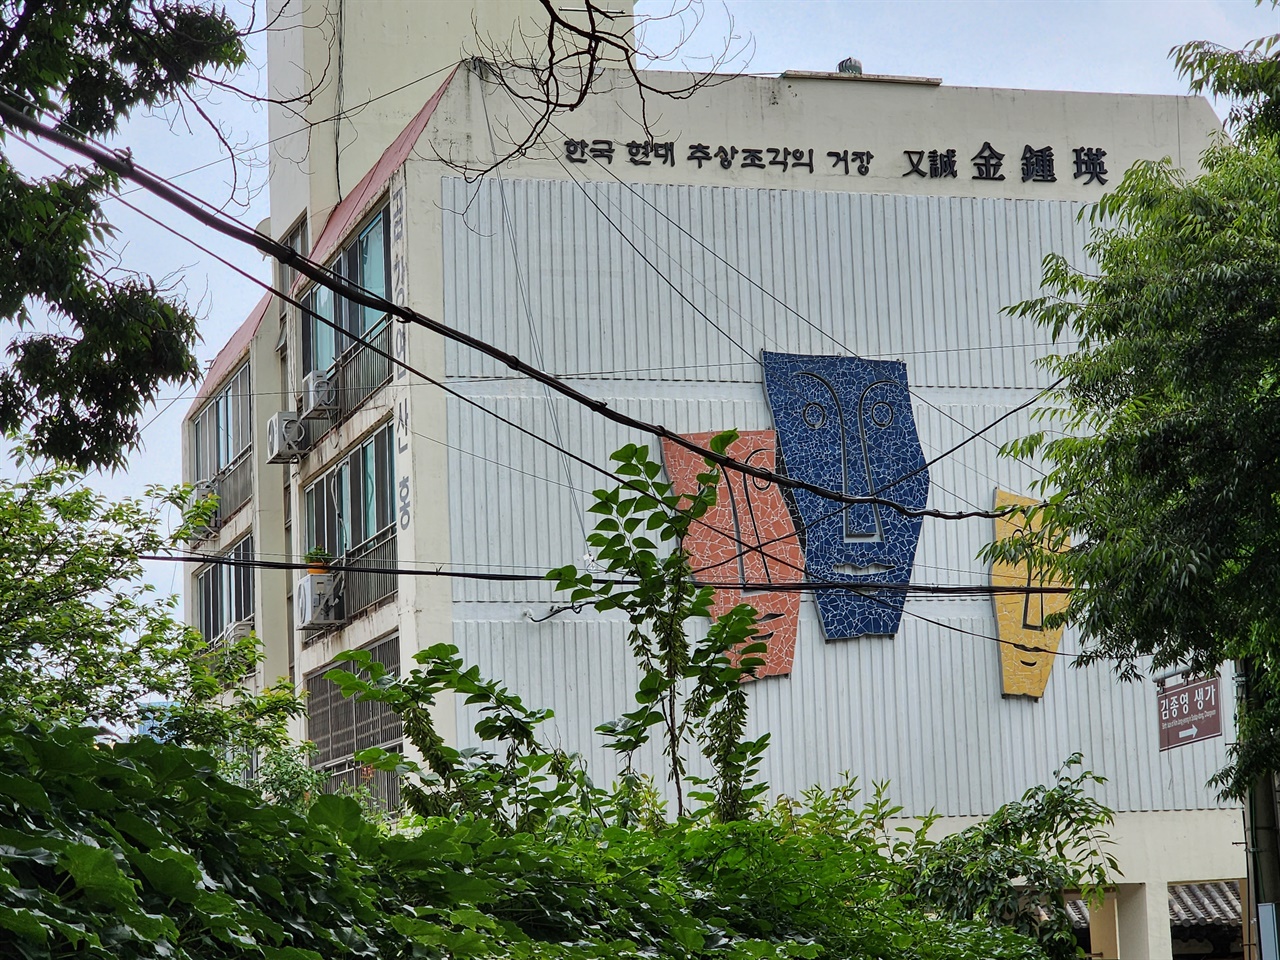 김종영 생가 옆의 아파트 벽면에 작가 소개와 작품을 붙여 작가와 작품을 기념하고 있다. 